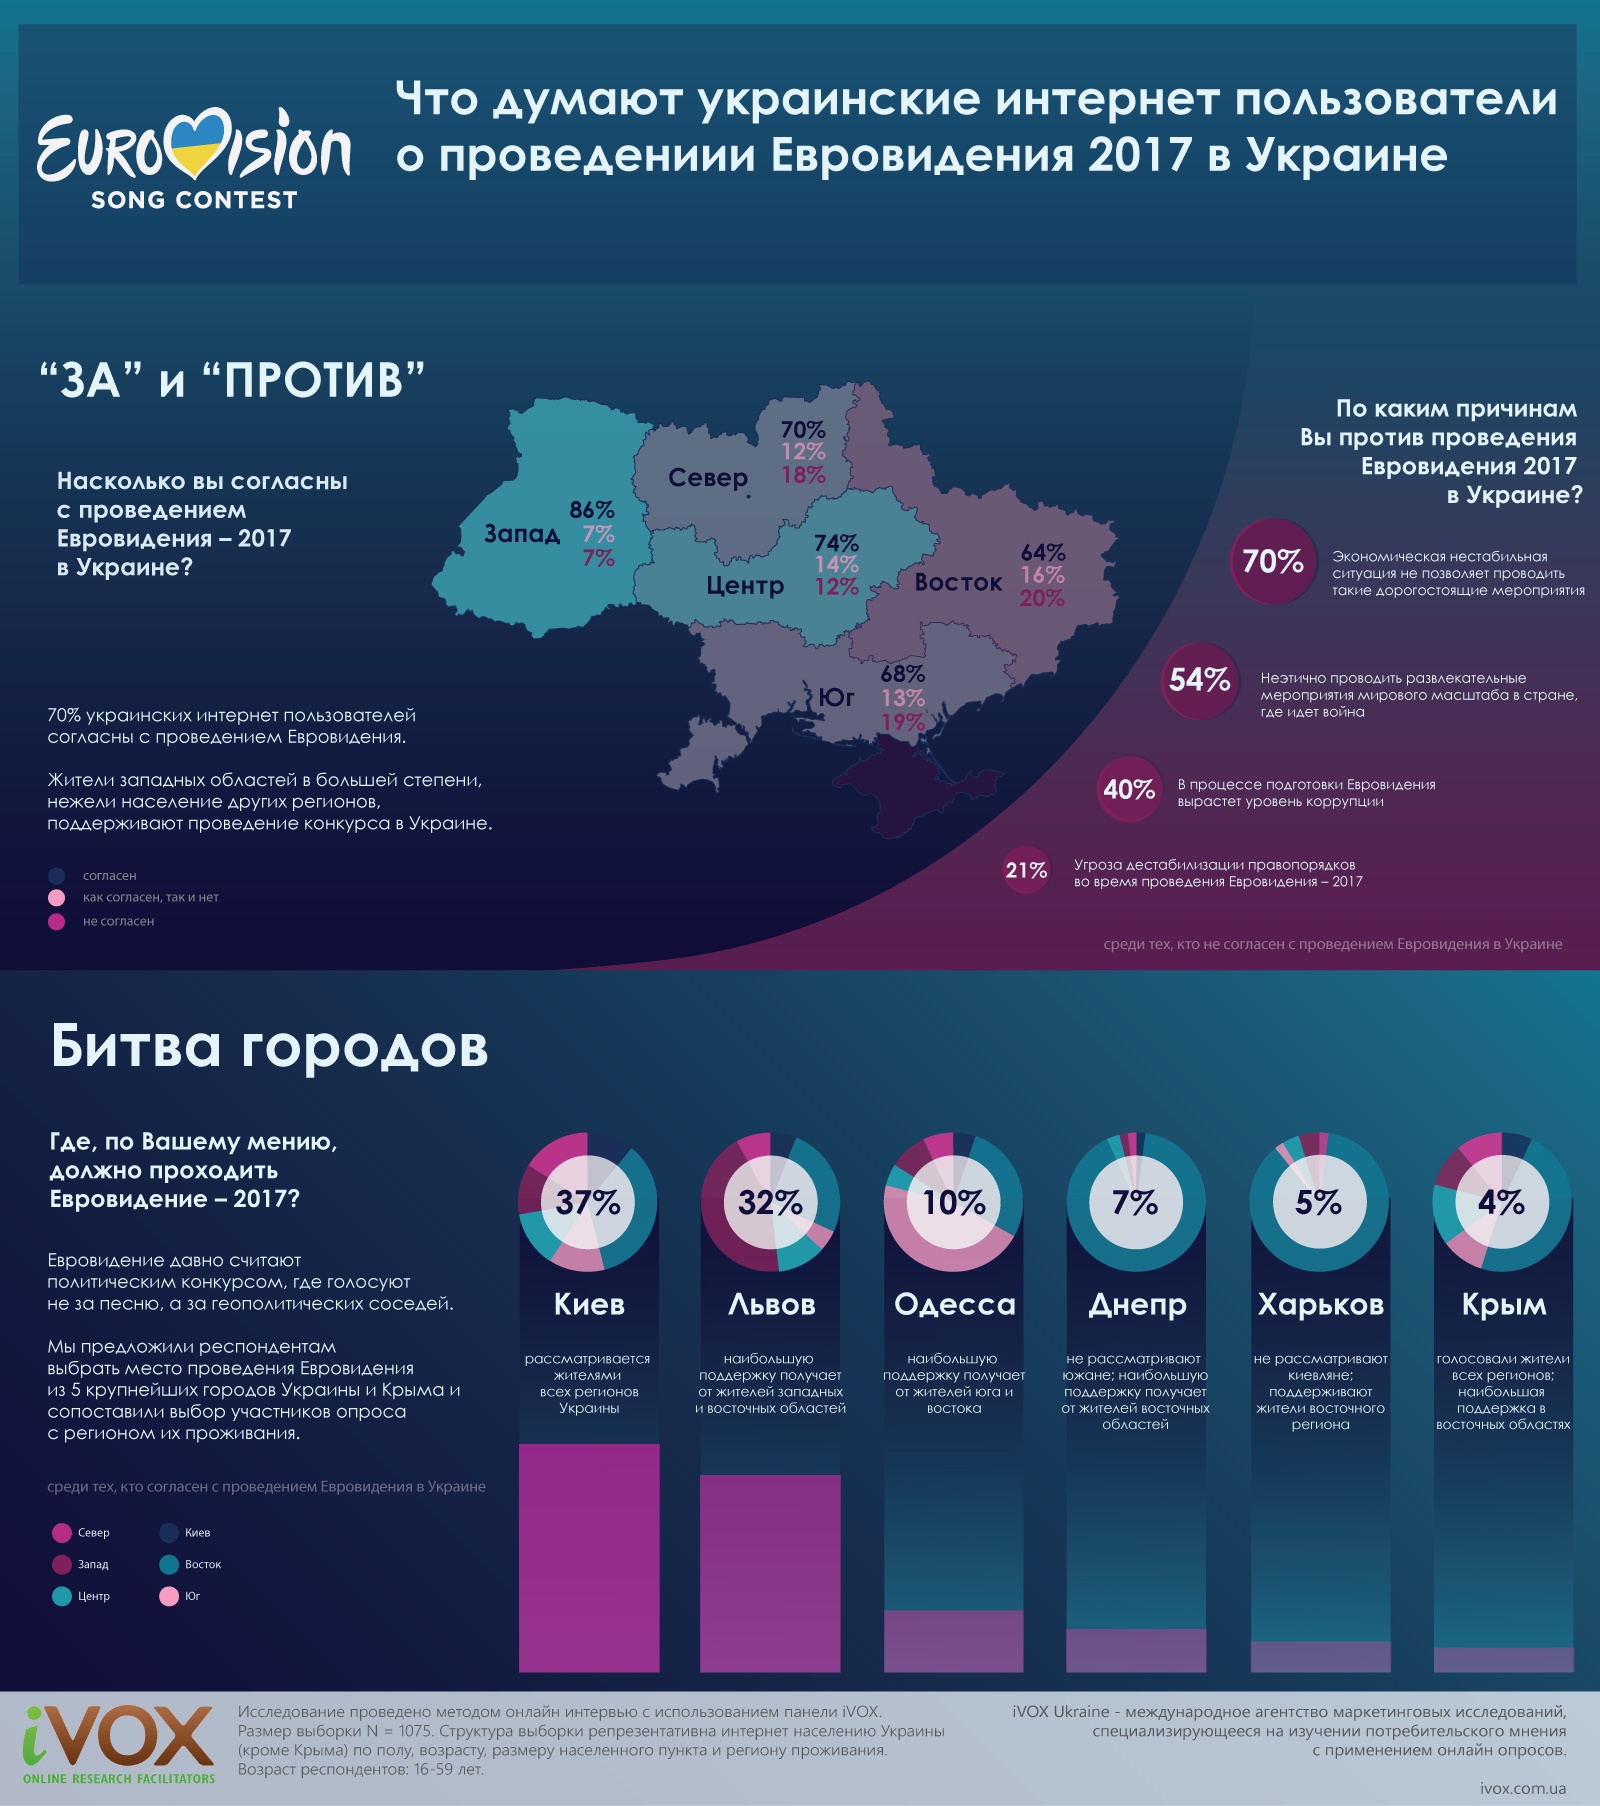 eurovision_2017_in_ukraine_full_rus